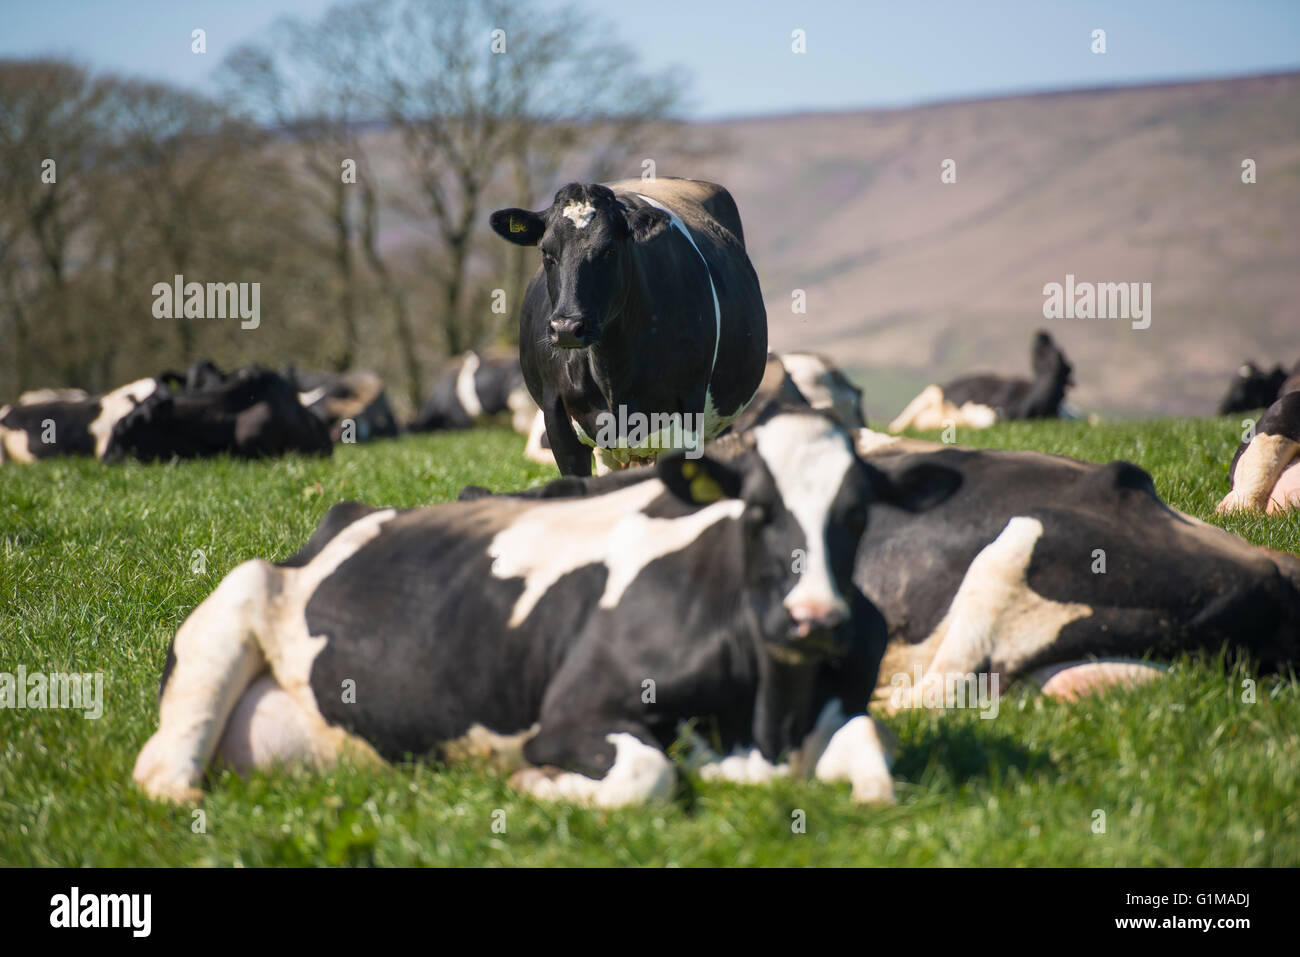 Schwarze und weiße Milchkühe auf einem Grasfeld. Lancashire. GROSSBRITANNIEN Stockfoto